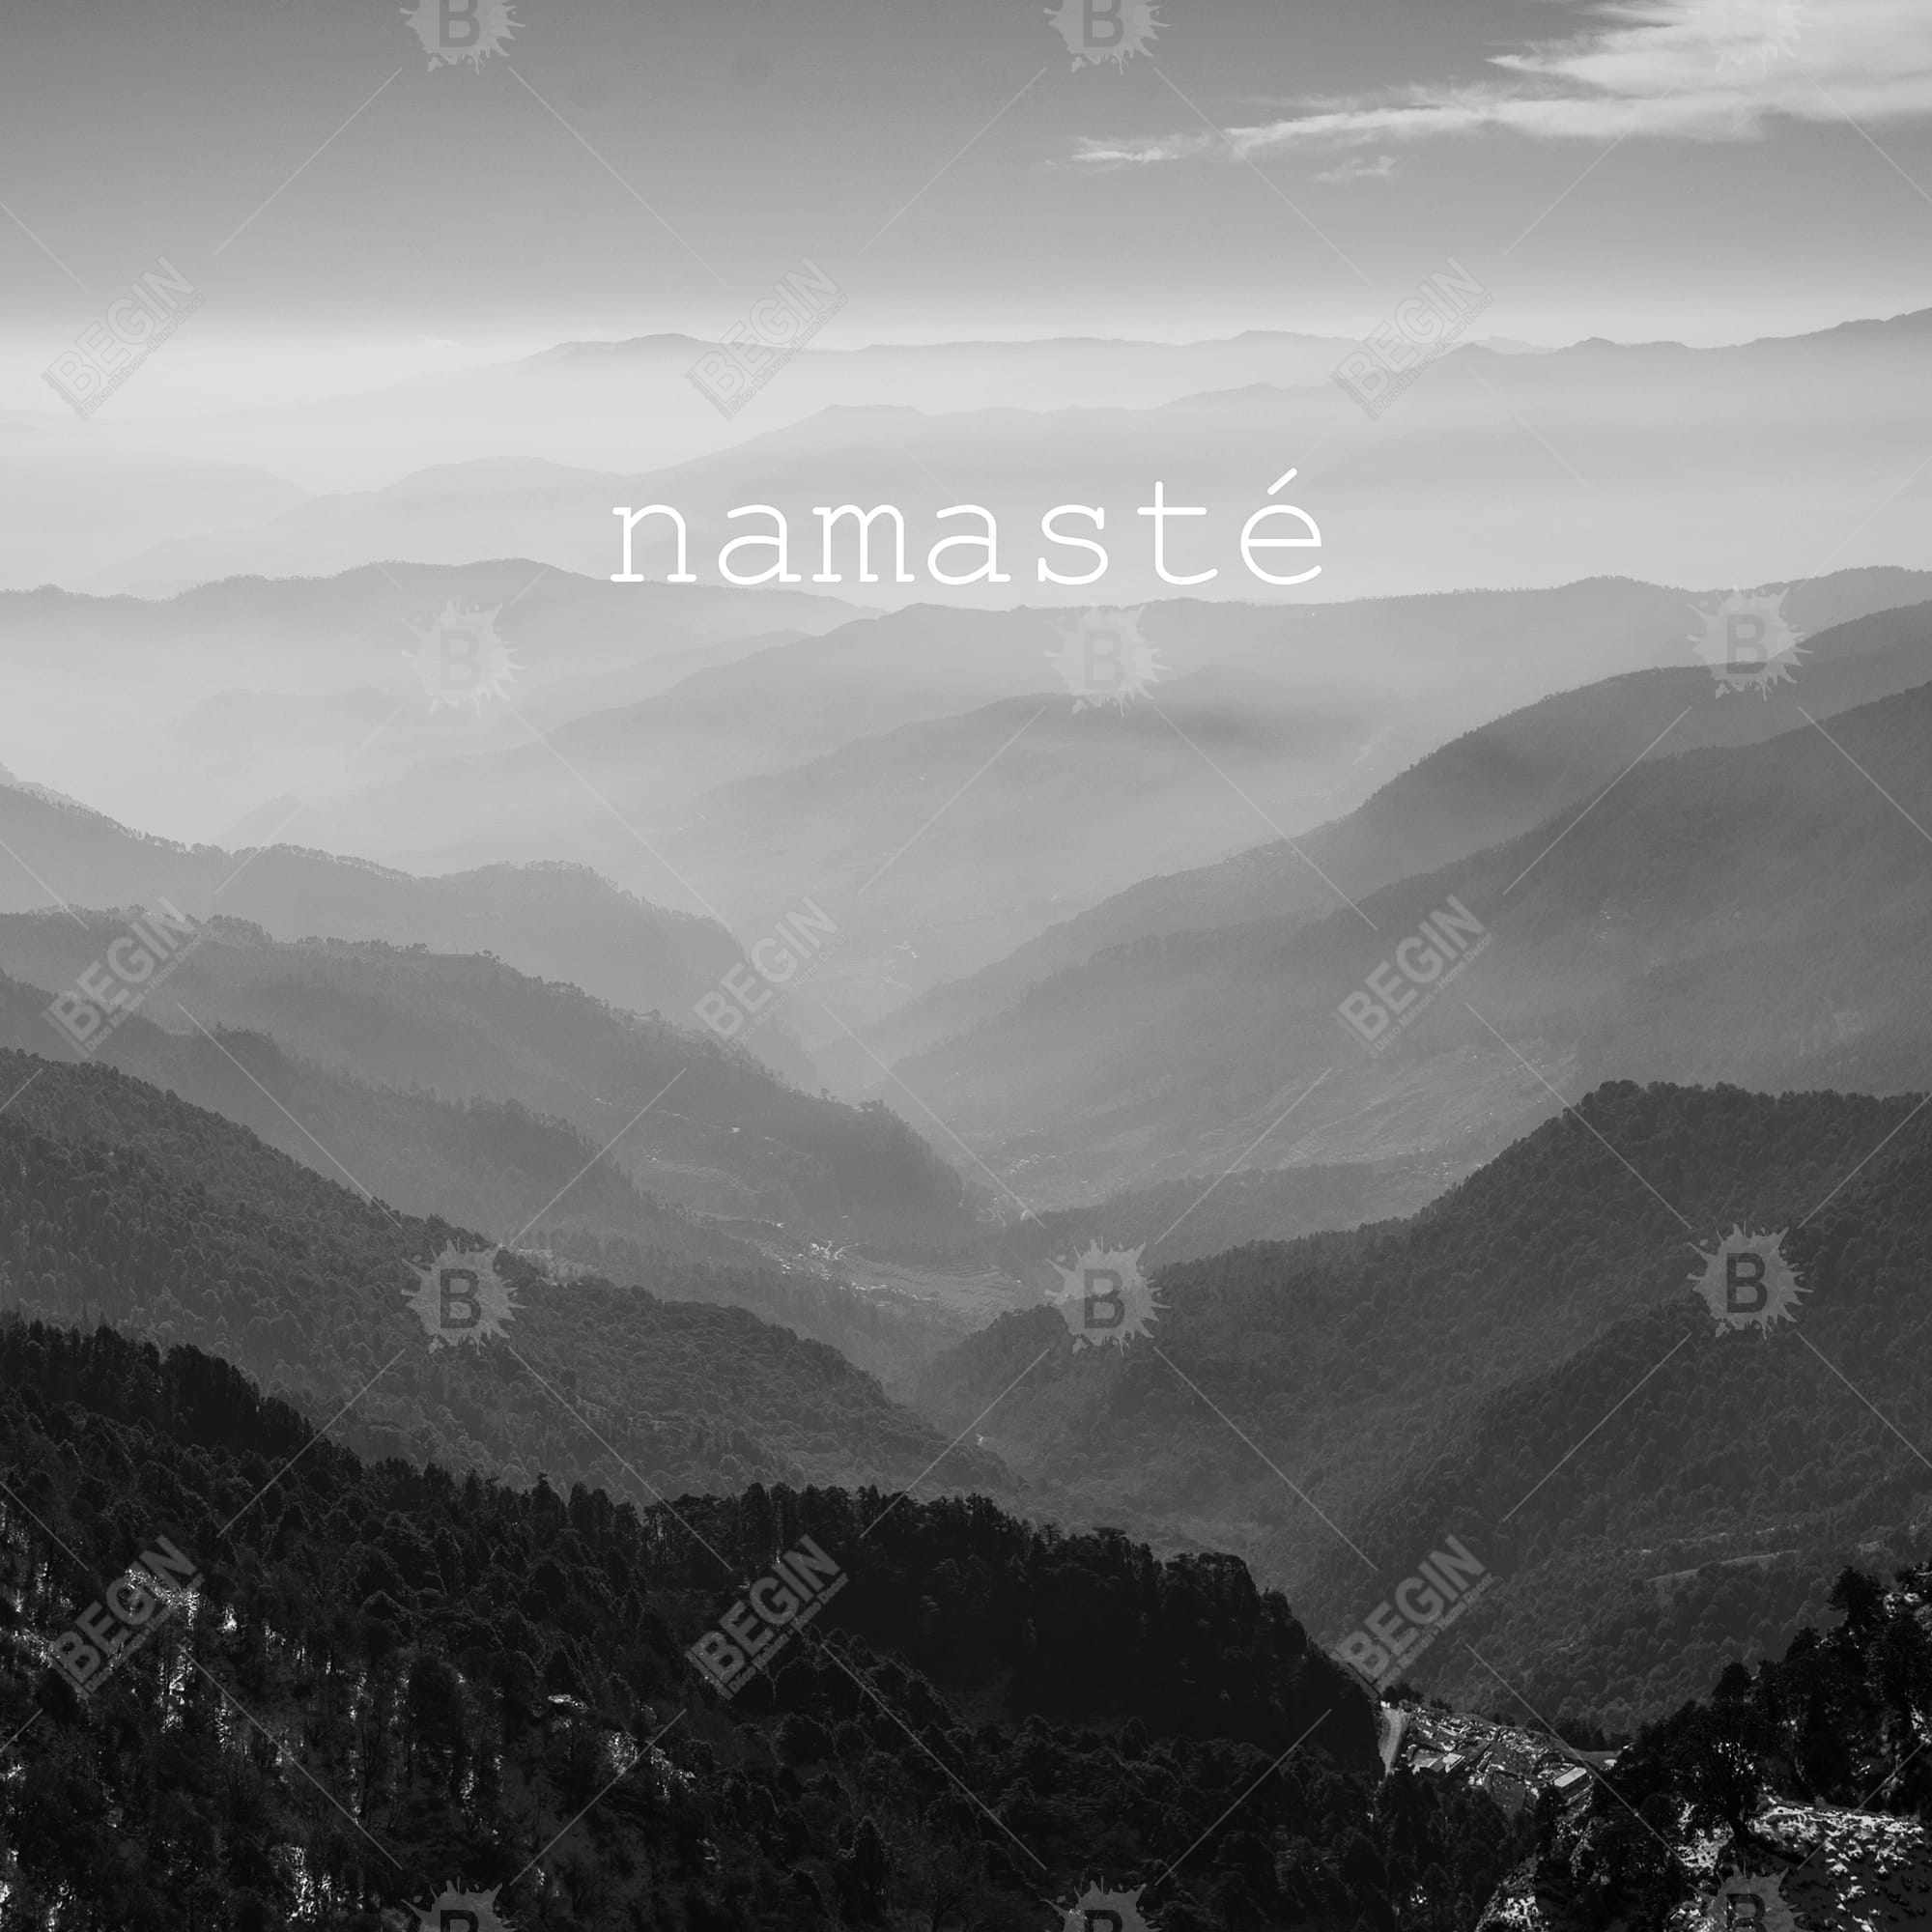 Namaste monochrome